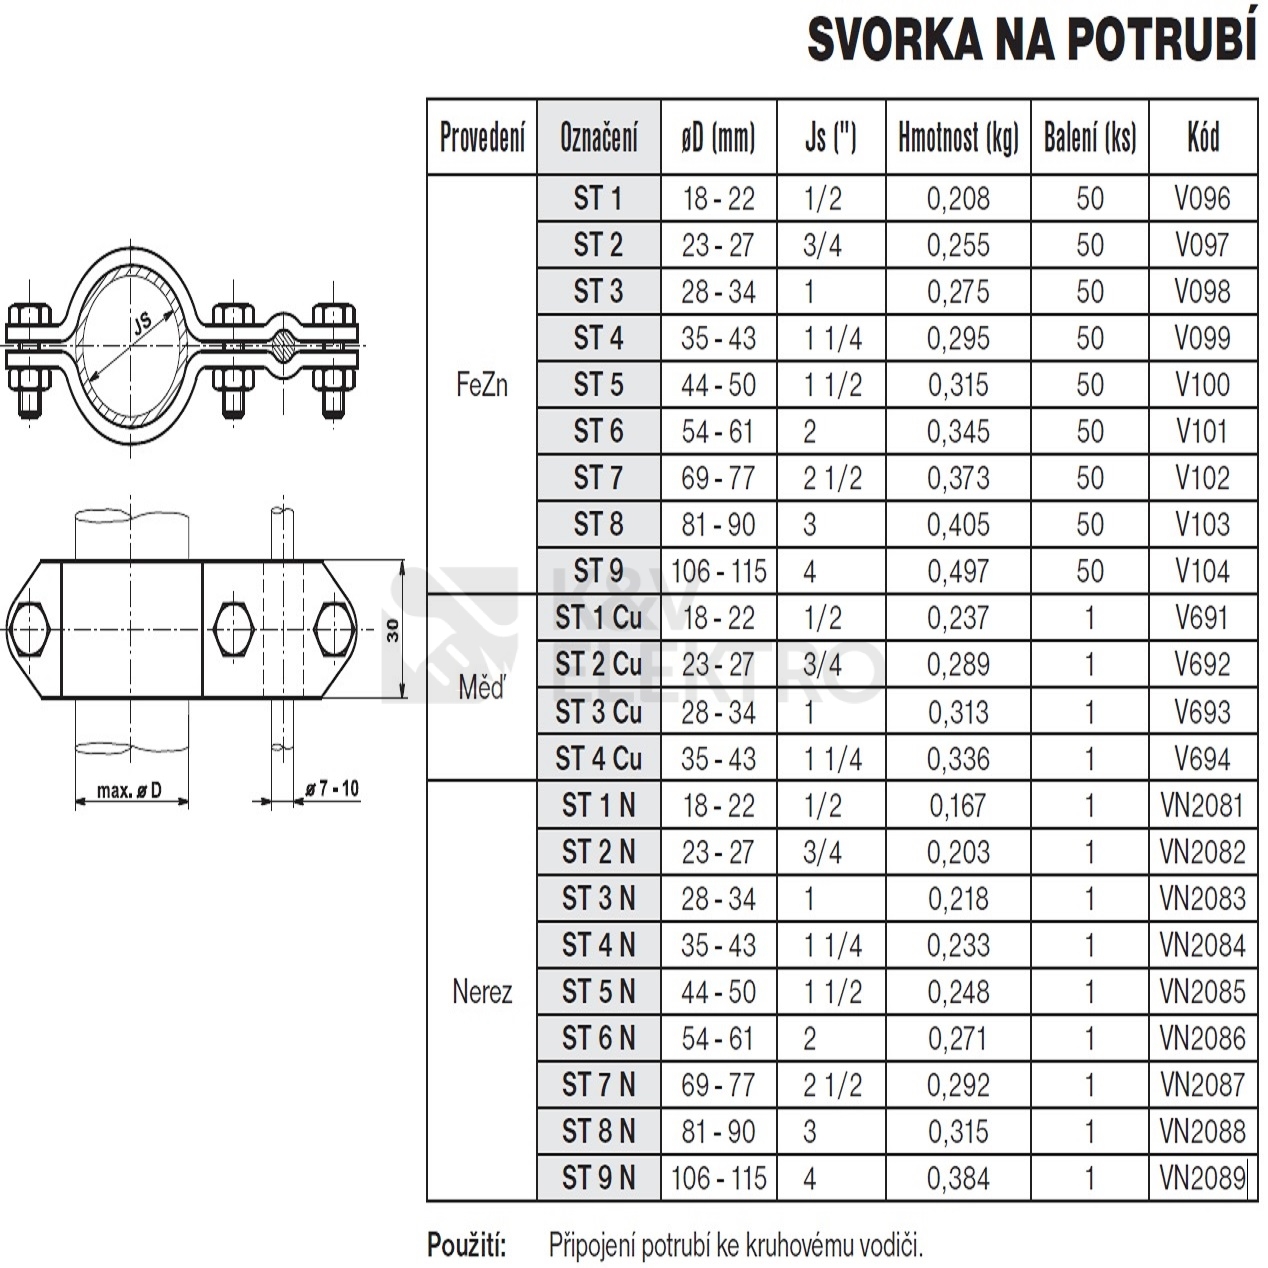 Obrázek produktu Svorka na potrubí 3" (90 mm) ST 8 TREMIS V103 1